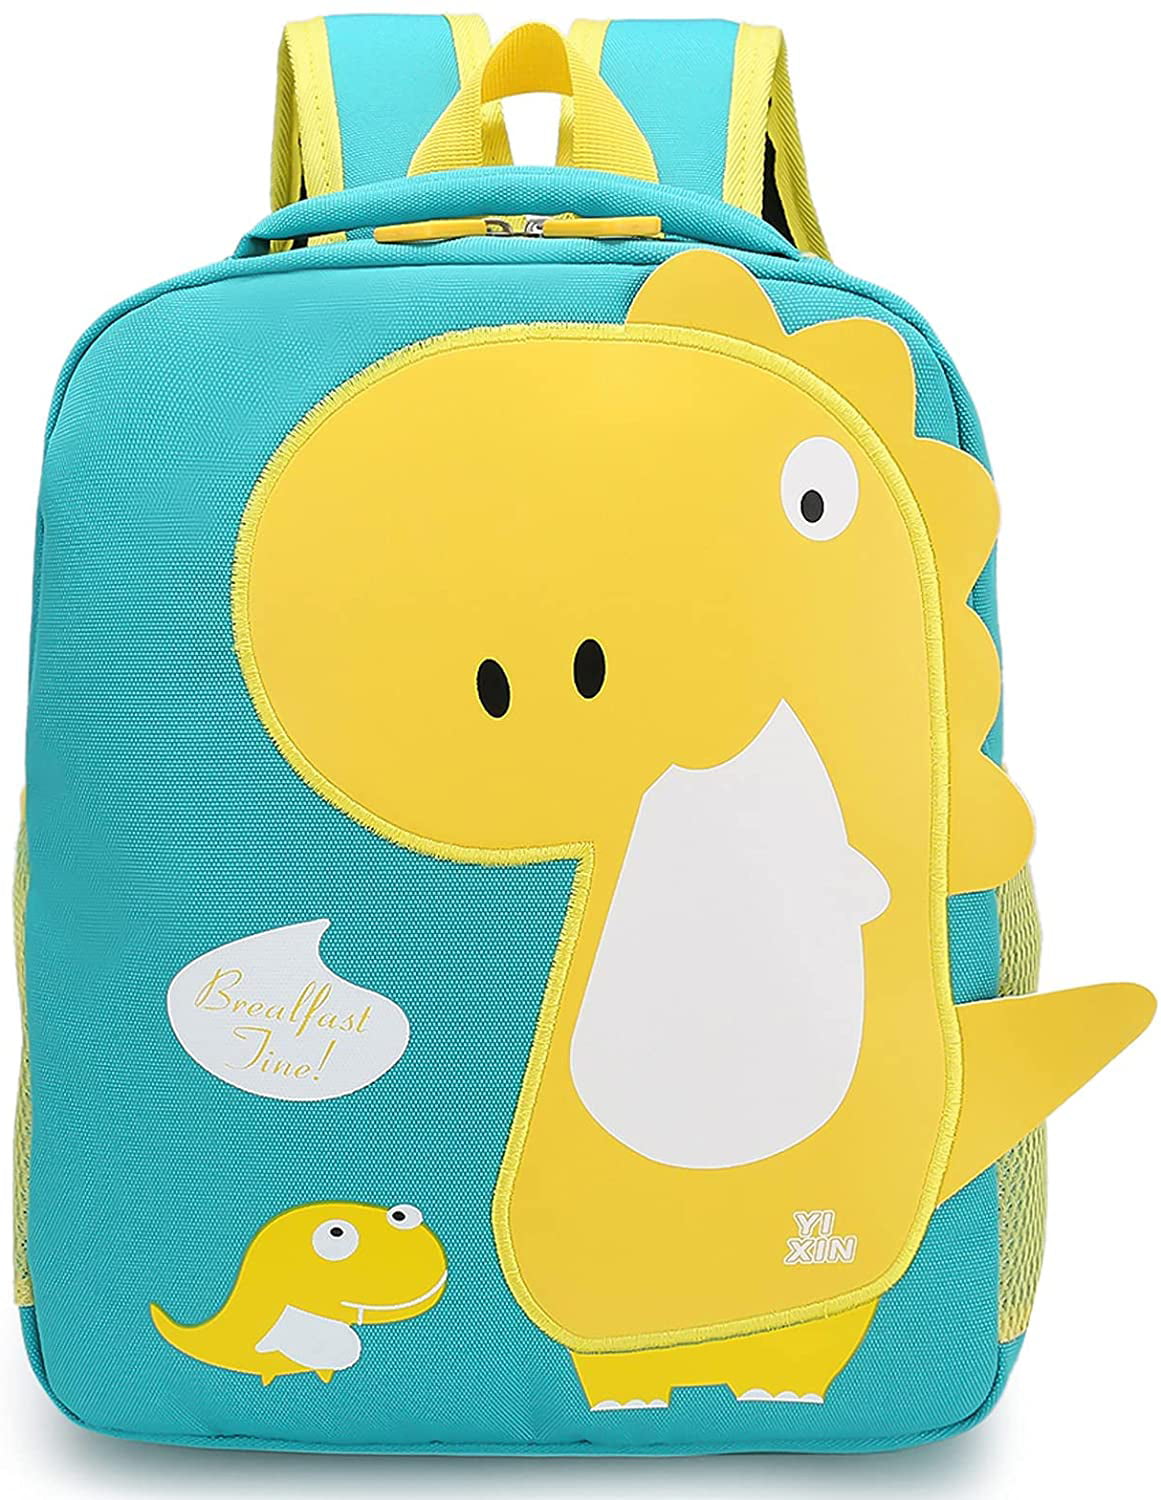 Kiddopark Toddler Backpack Kids Travel Backpack, Waterproof Cute